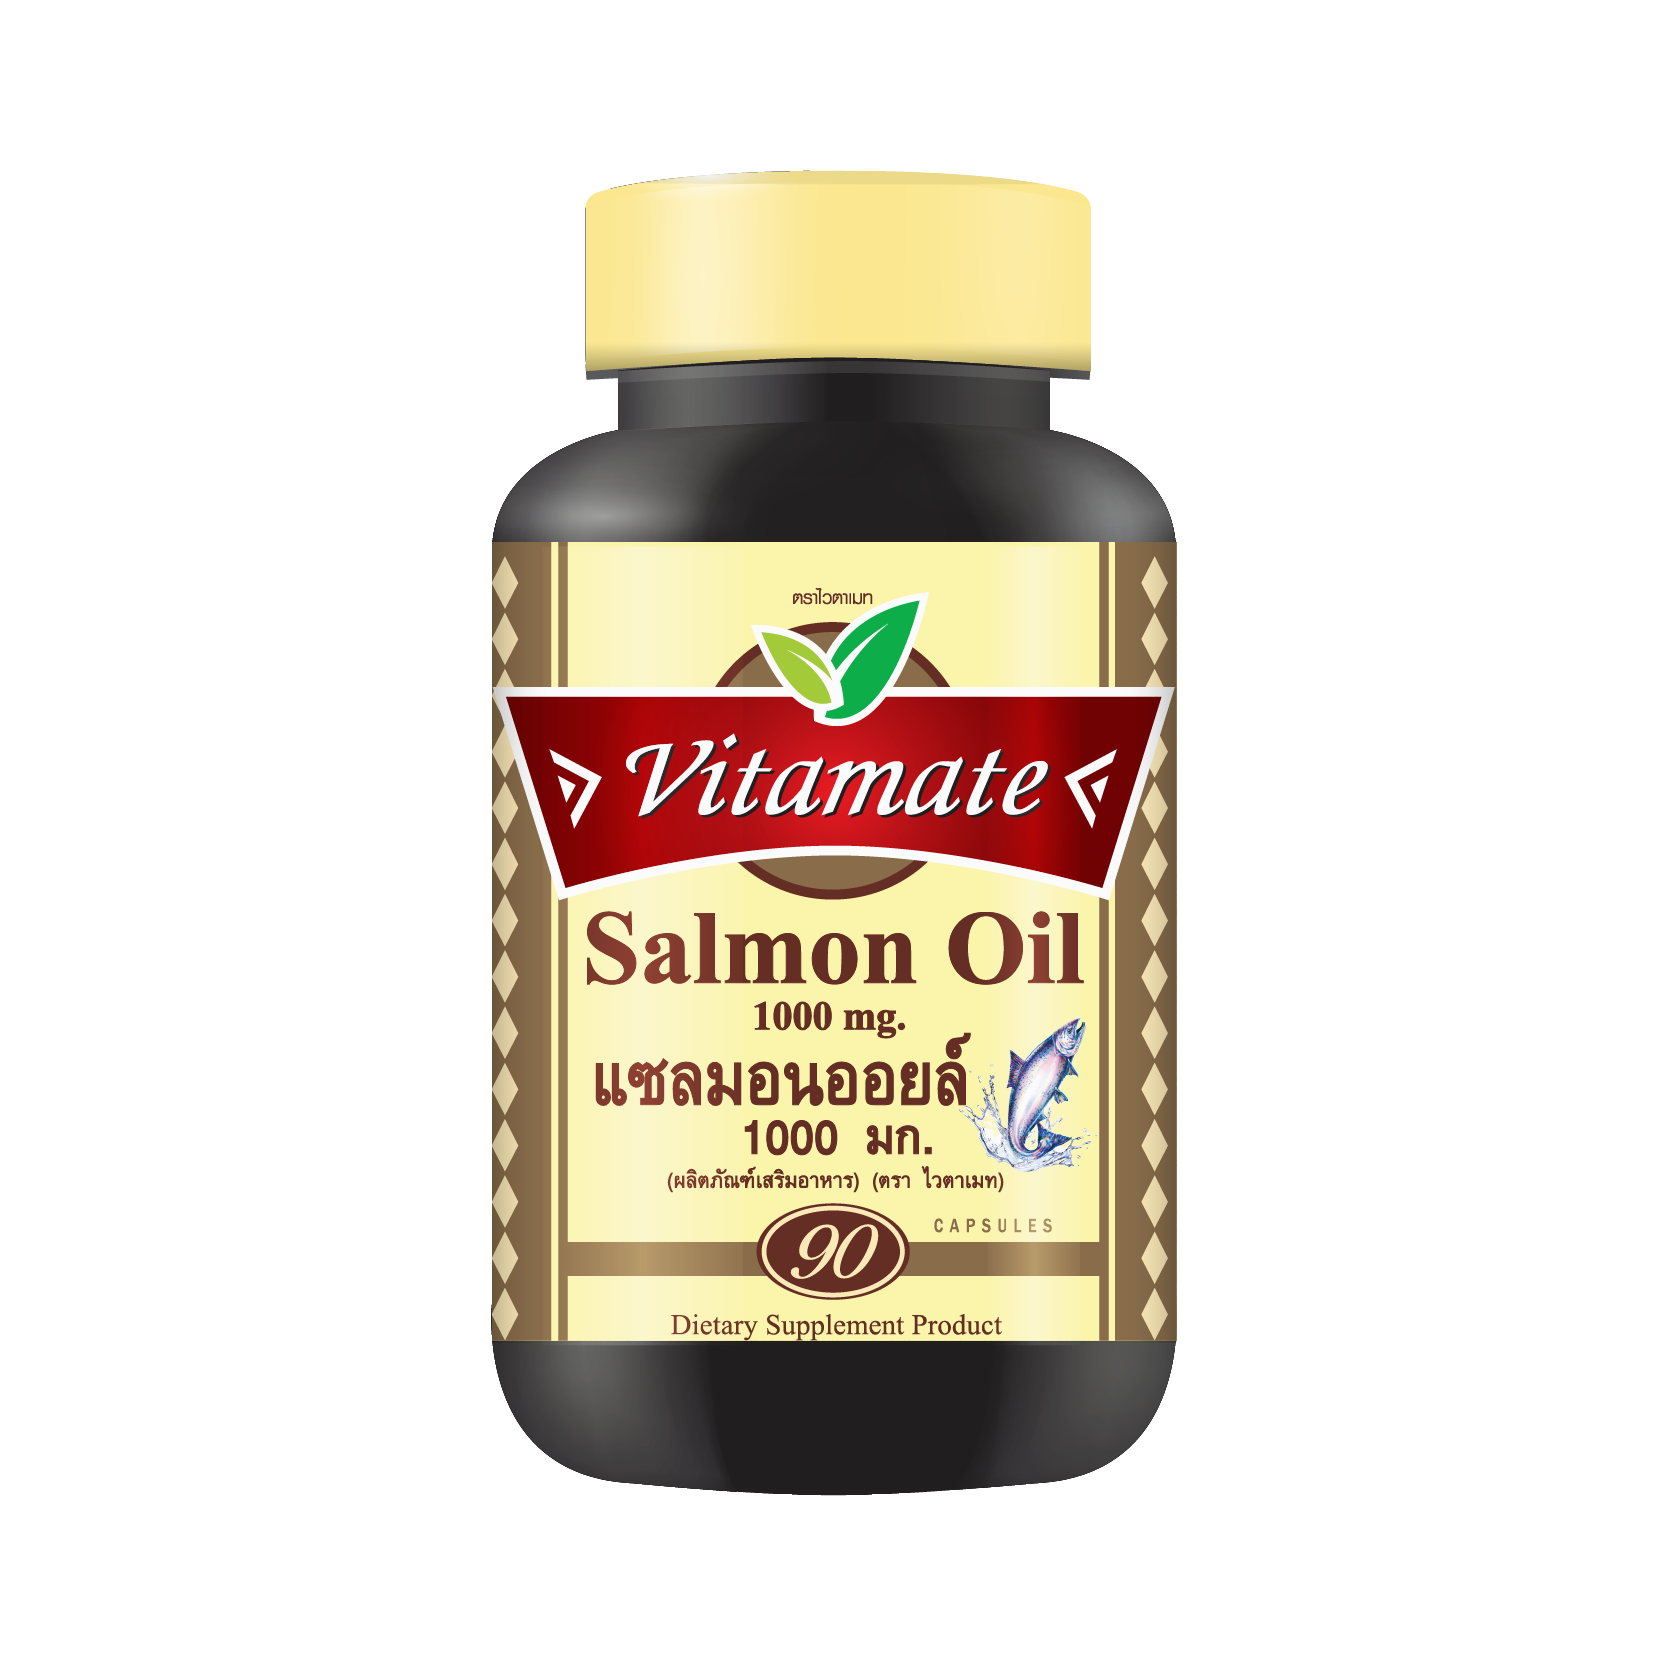 Vitamate Salmon Oil